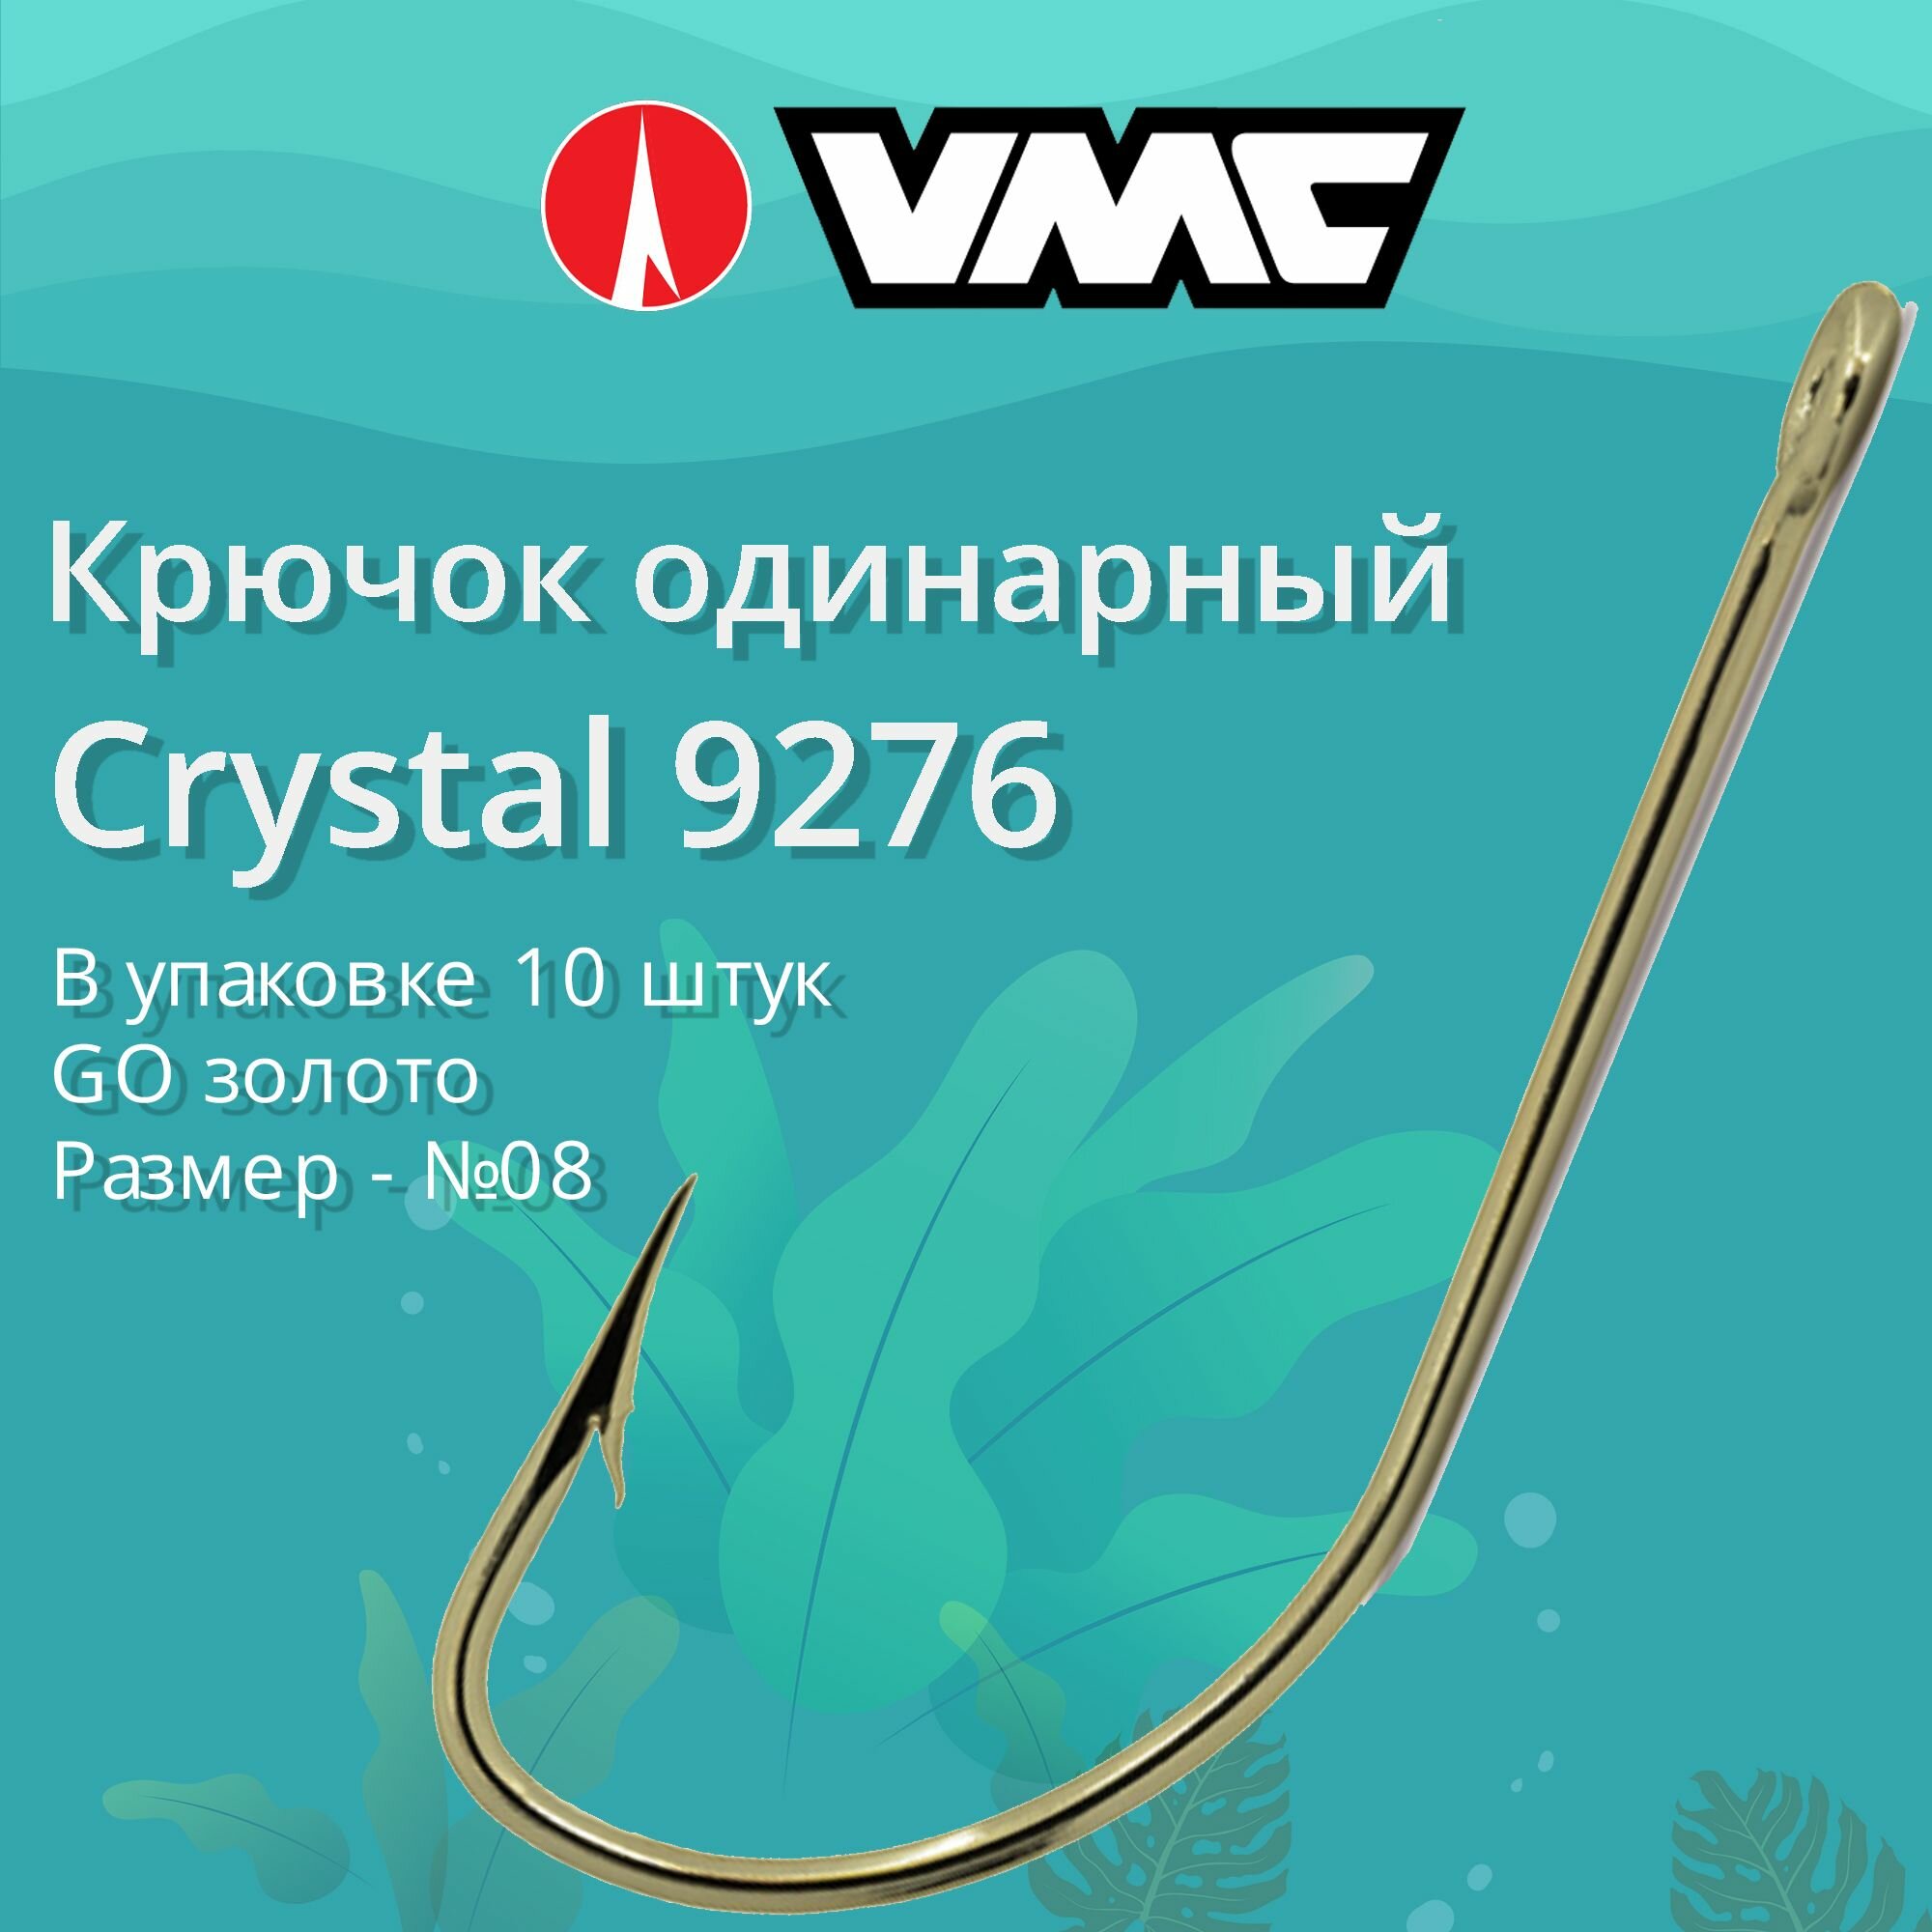 Крючки для рыбалки (одинарный) VMC Crystal 9276 GO (золото) №08 упаковка 10 штук